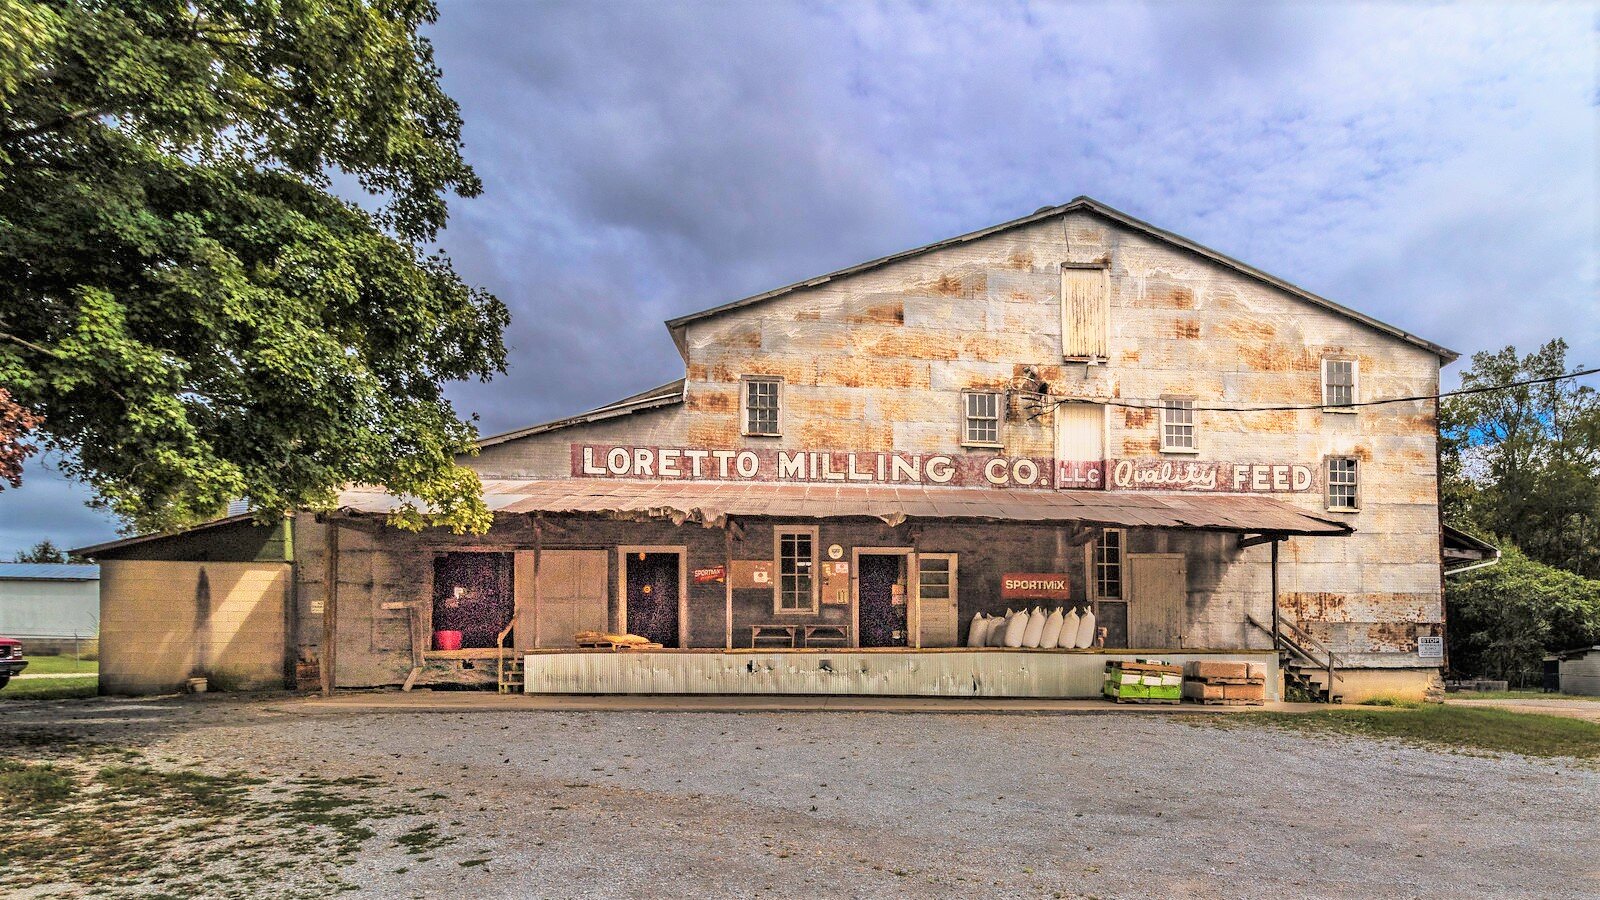 loretto-milling-company.jpg